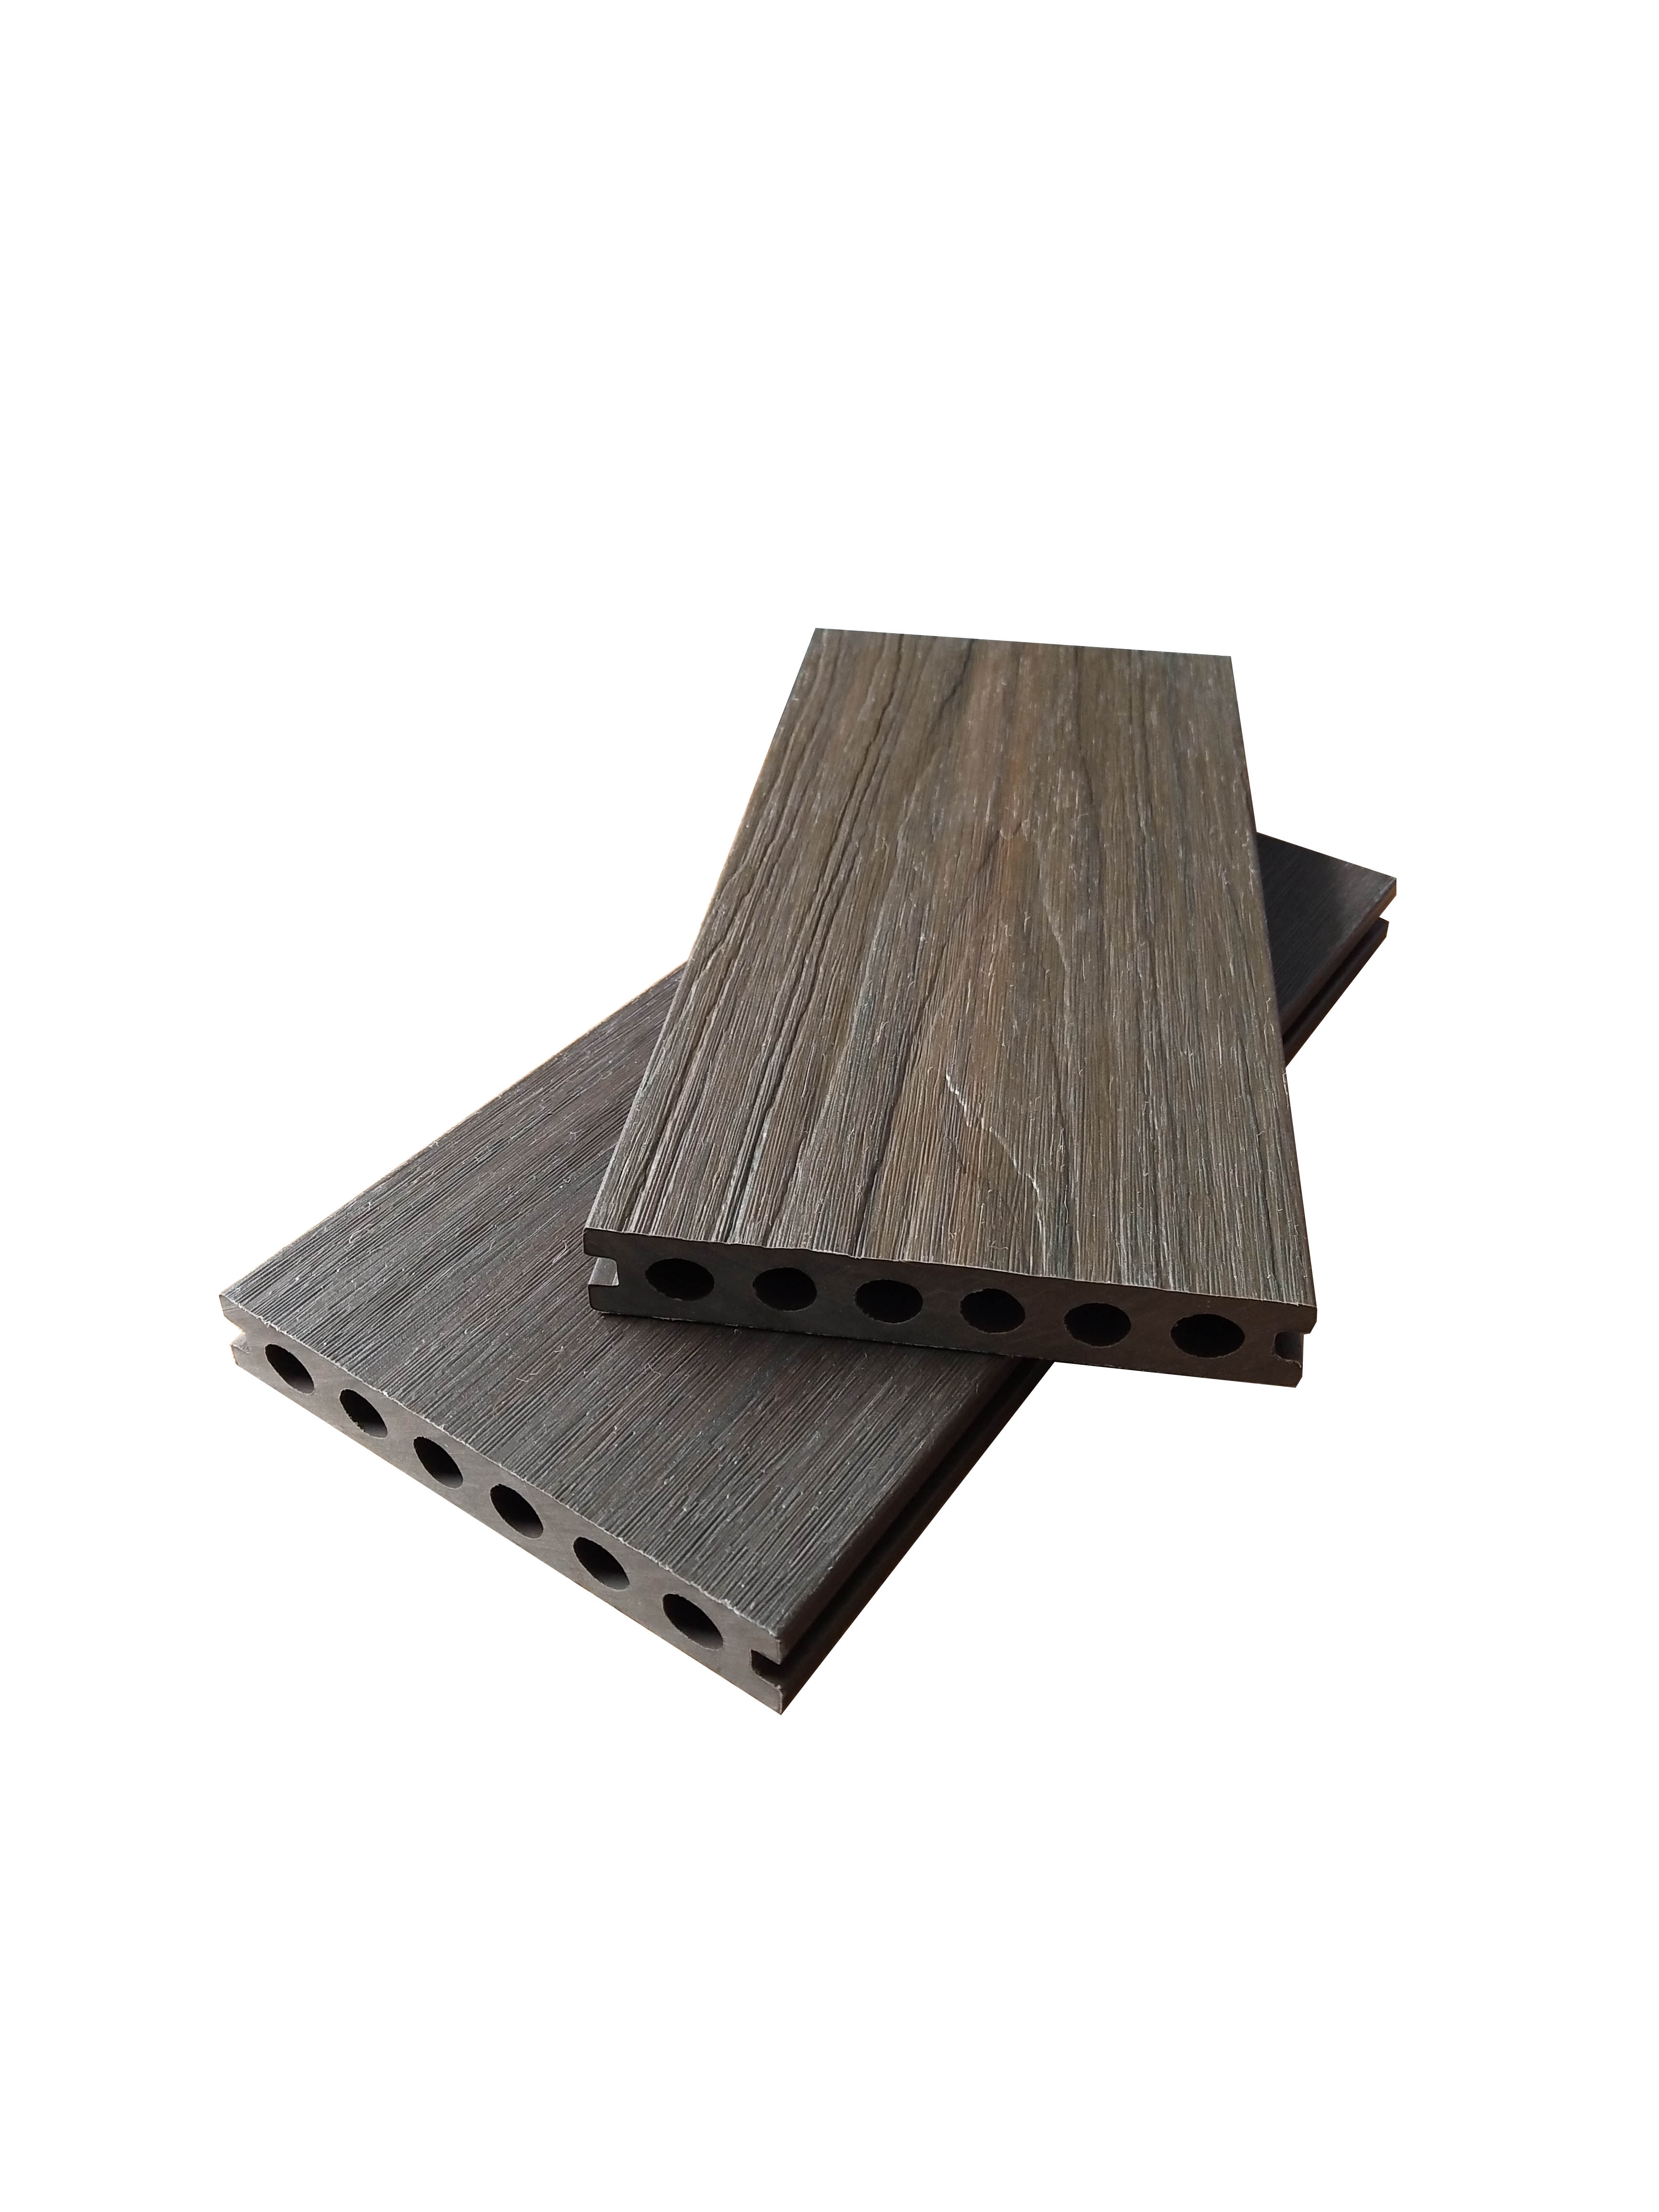 En relieve con una plataforma compuesta de WPC de grano de madera especial